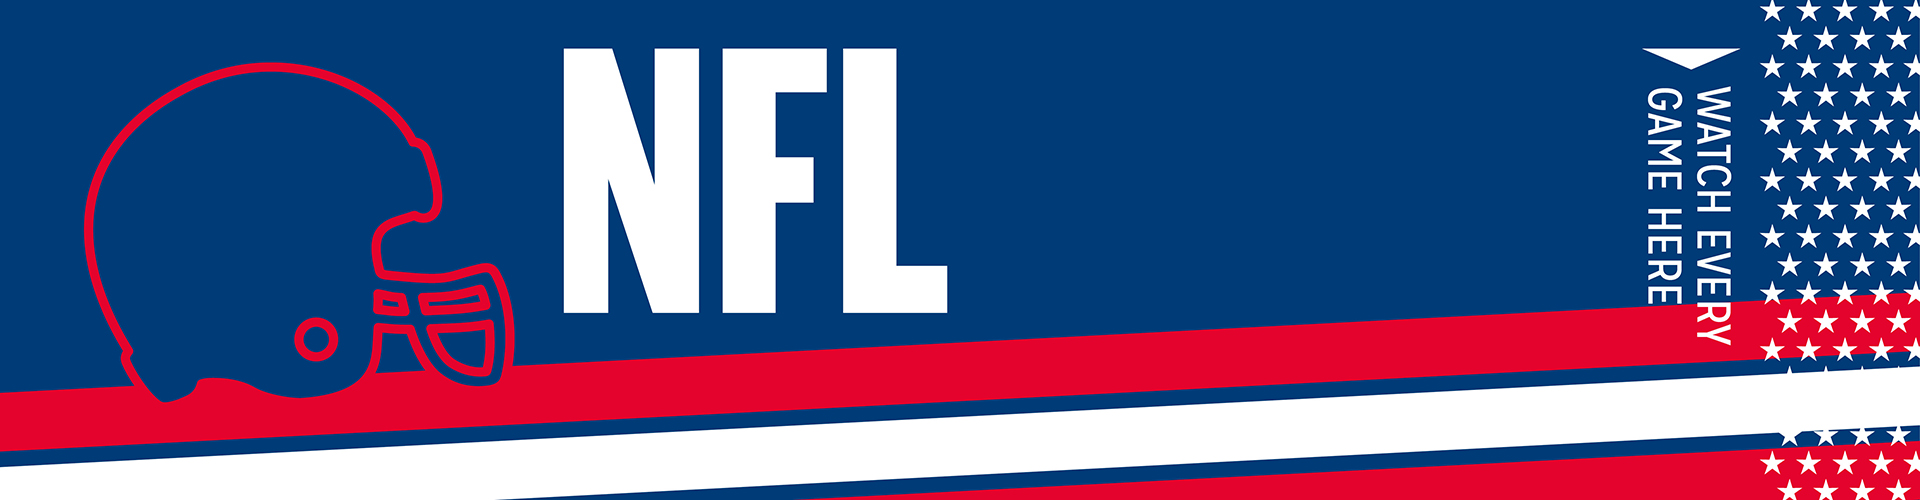 NFL Header Banner Image - Student Pubs showing the NFL